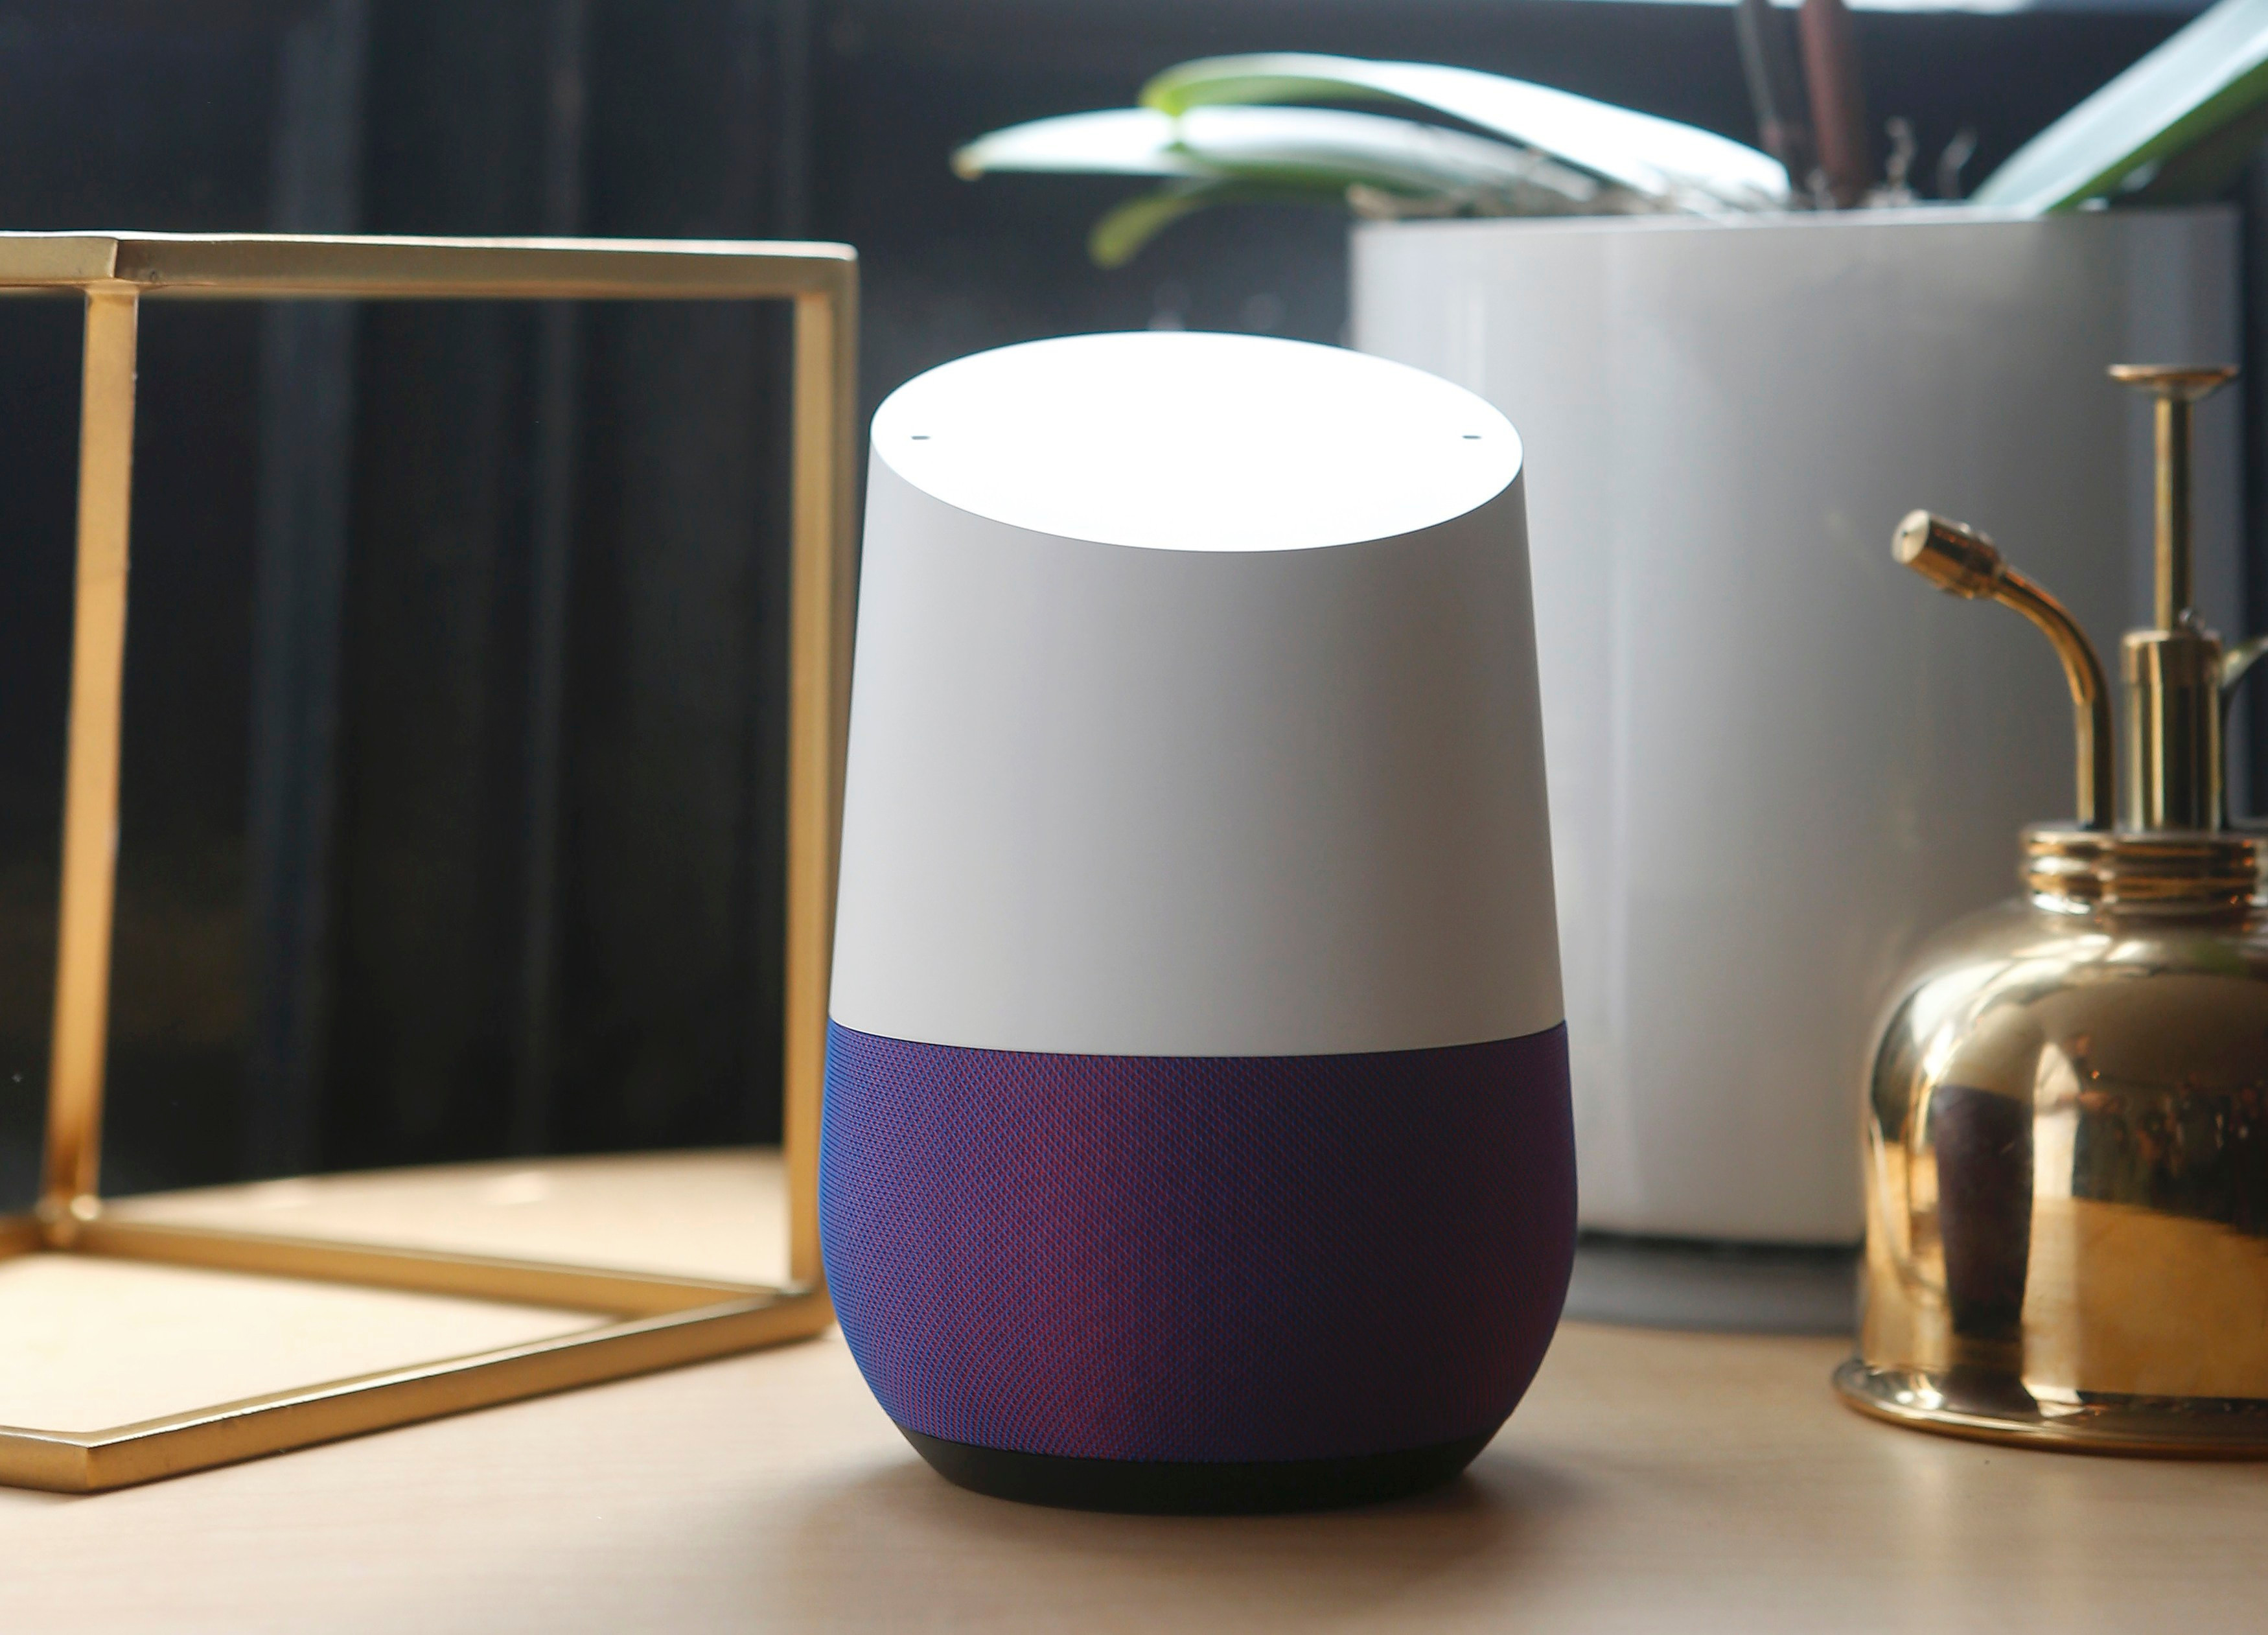  Google Home sudah tersedia di AS dan akan diluncurkan di Inggris pada bulan Juni